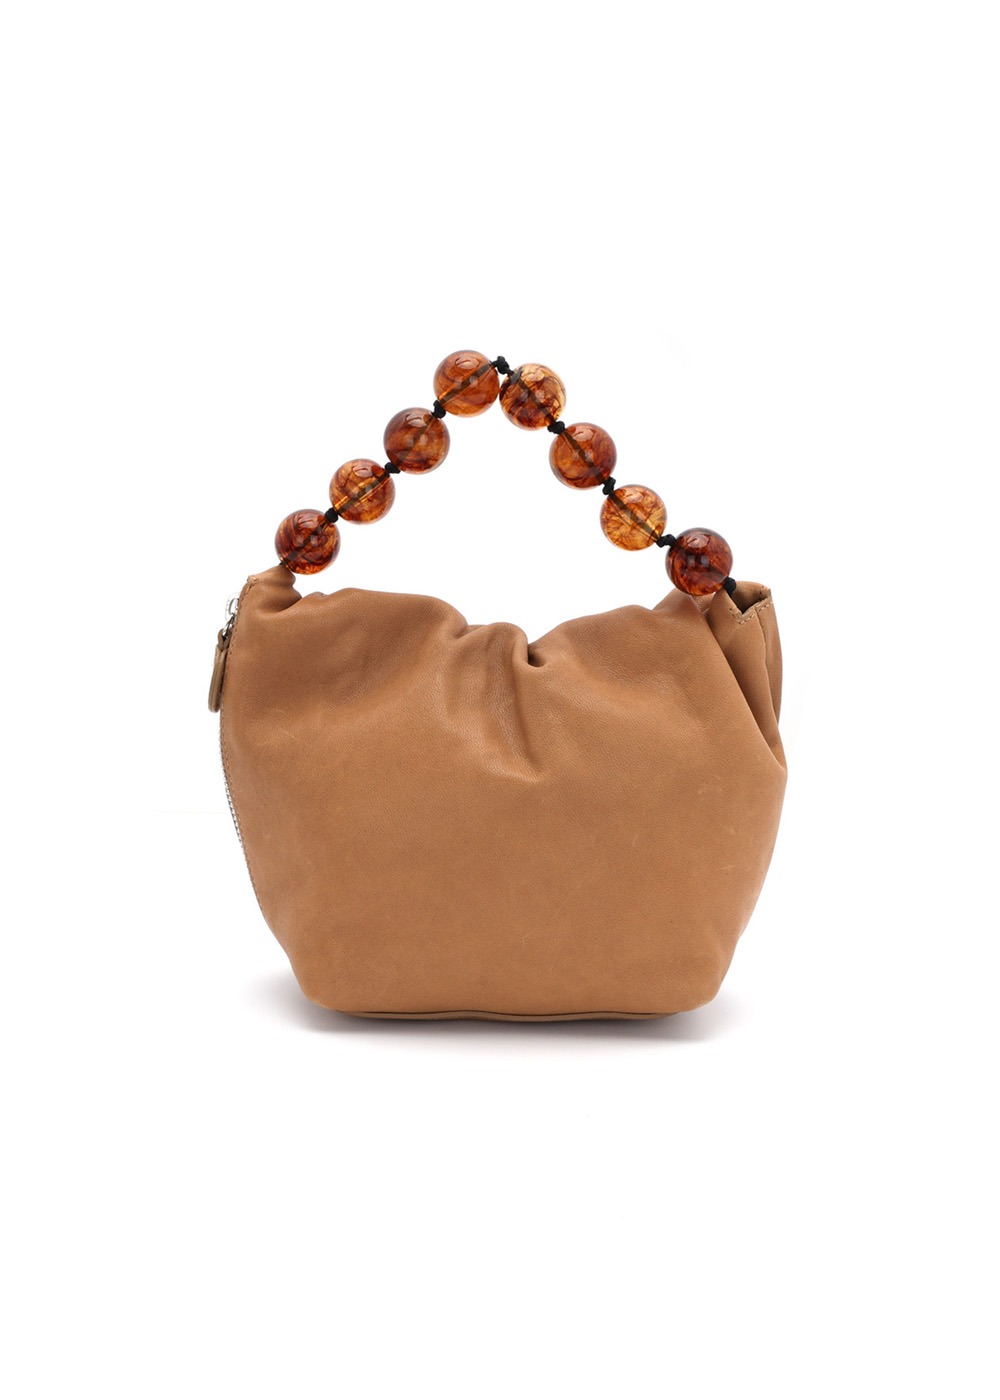 램스킨 비즈 핸들 미니백 Lambskin Beads-handle Mini Bag_Tan